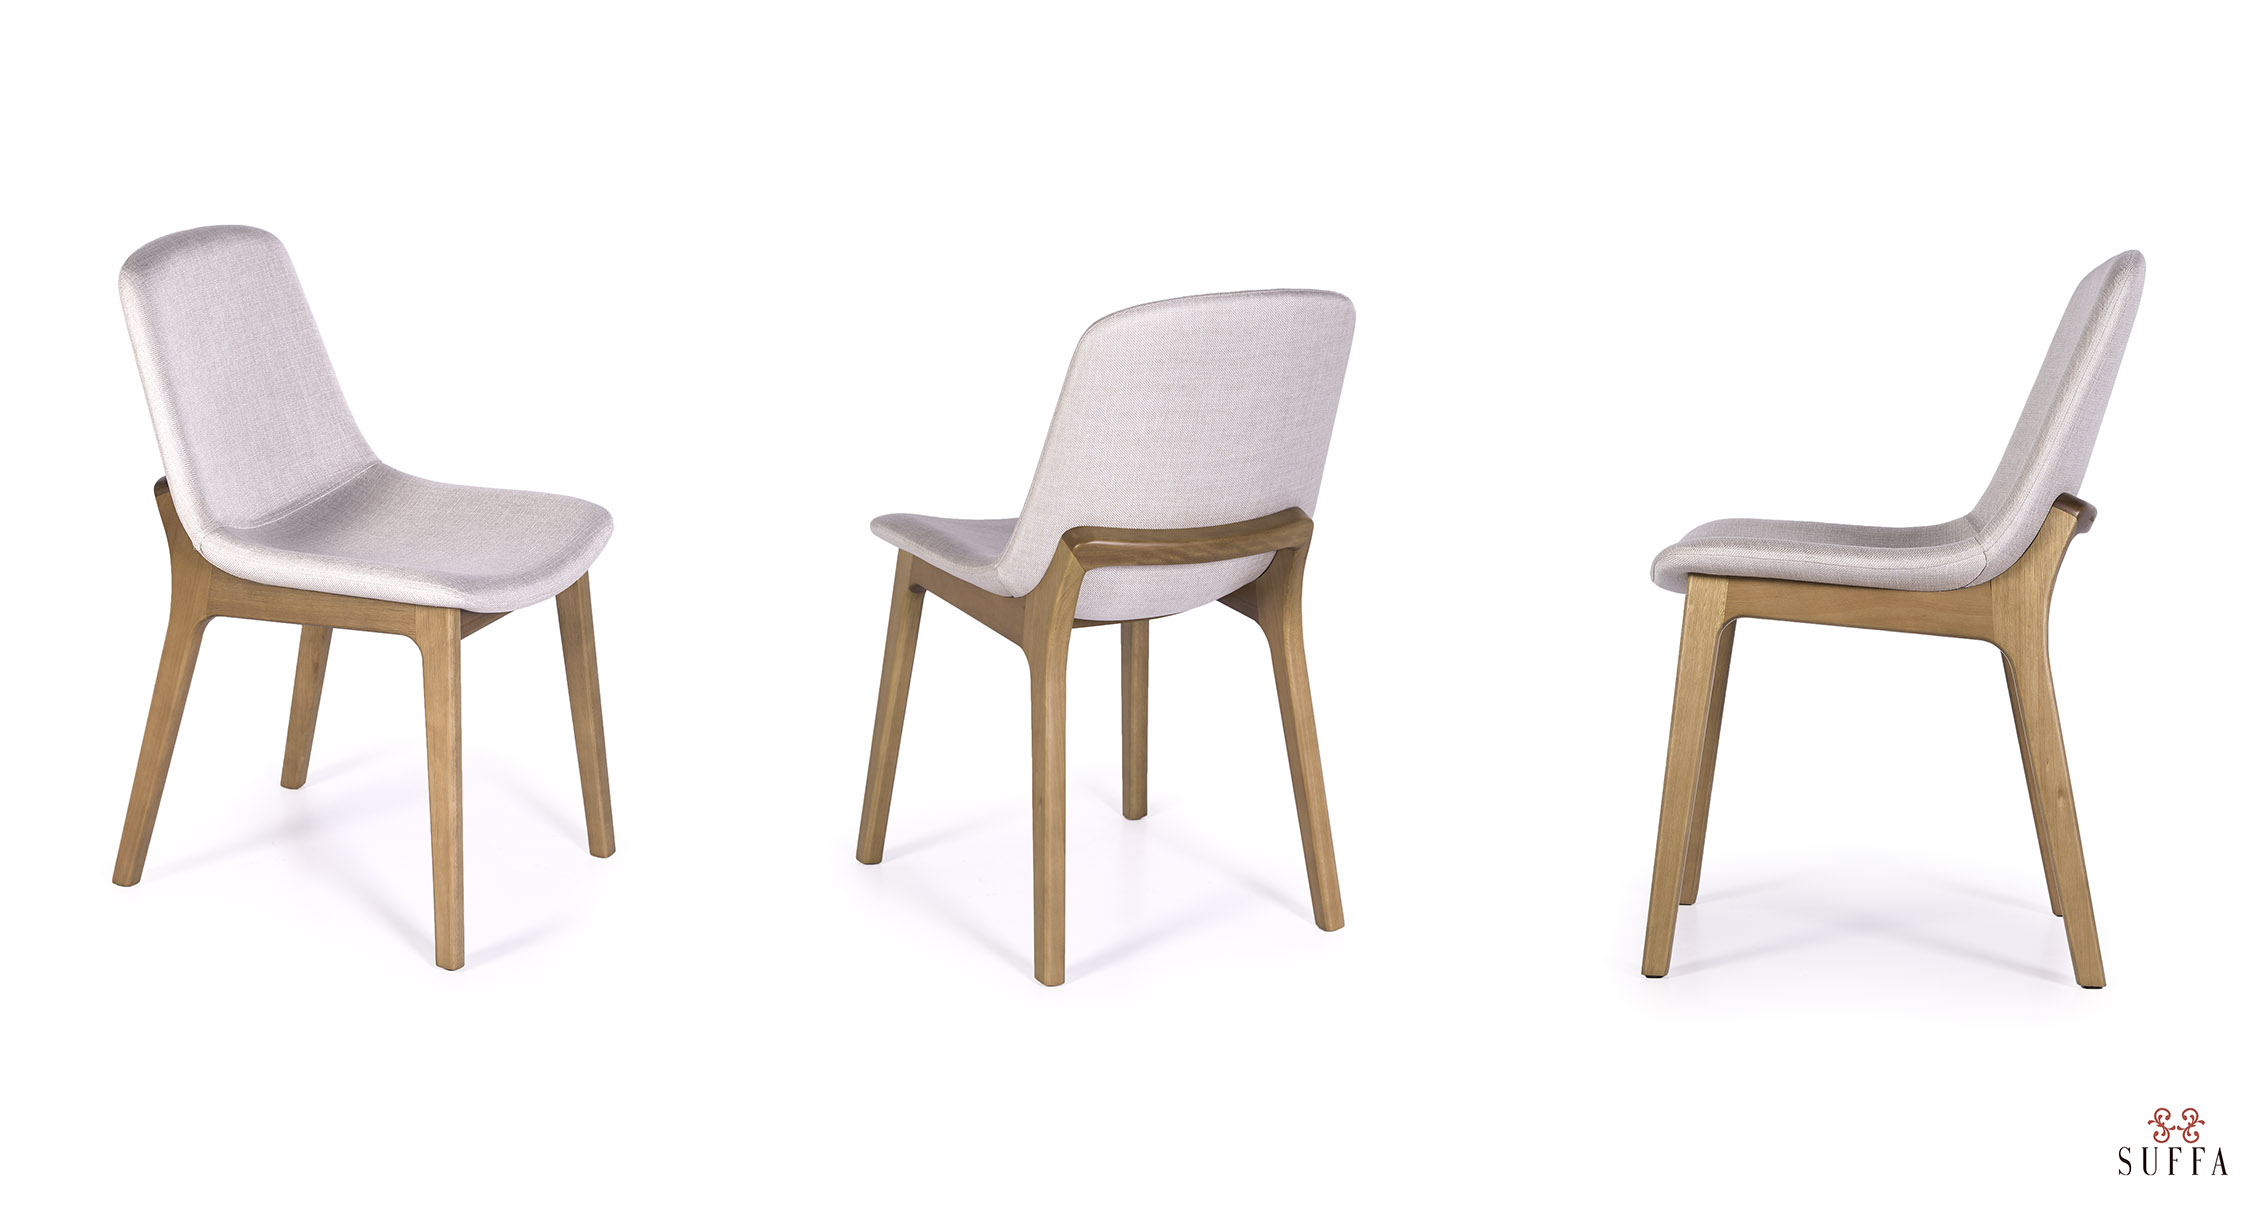 Três imagens de uma cadeira em diferentes posições para ilustrar artigo sobre como escolher uma cadeira. 